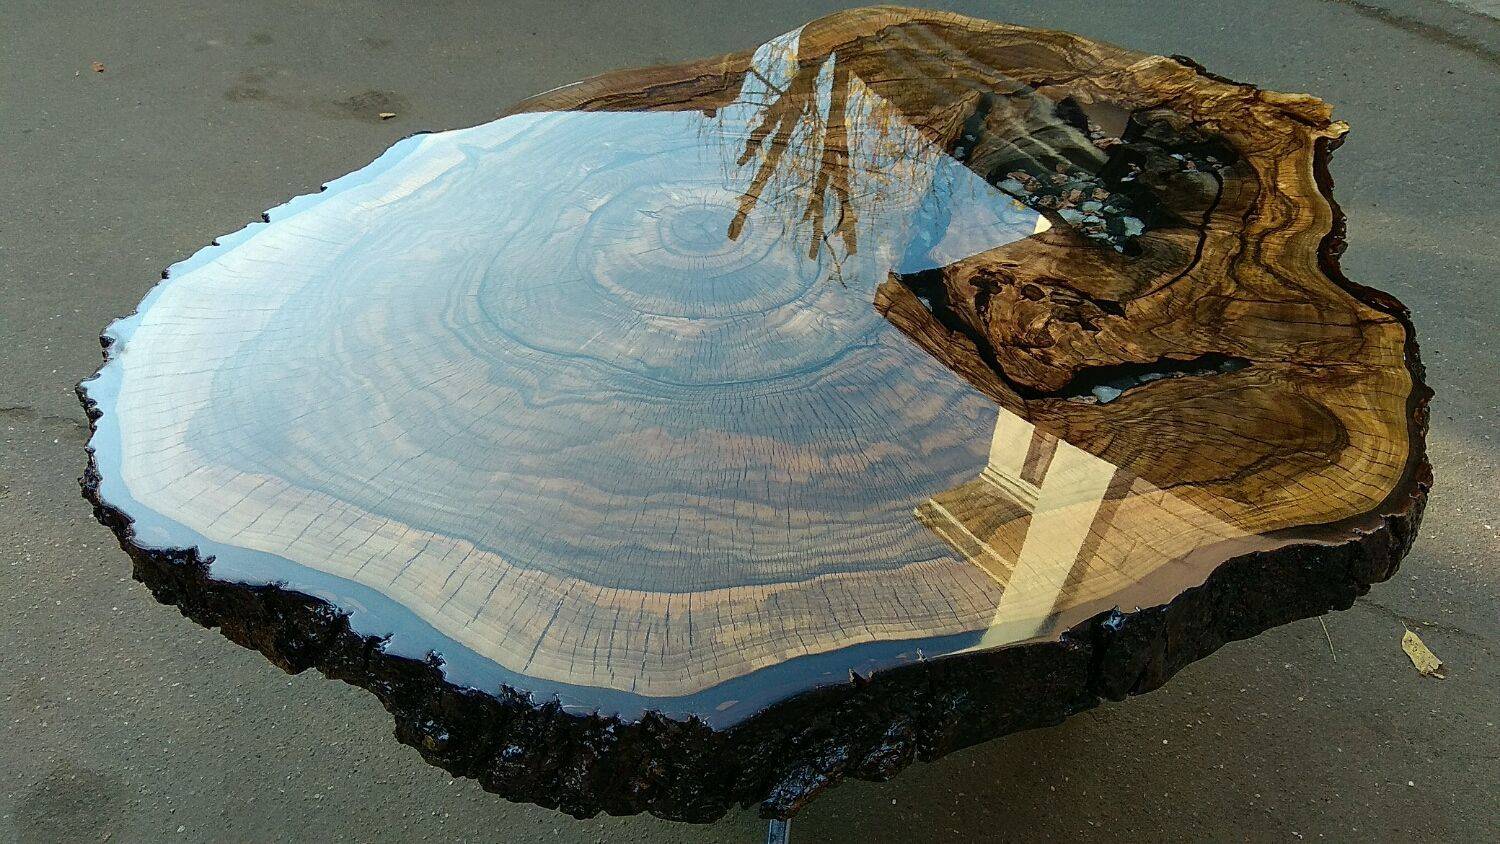 Деревянный стол с эпоксидной смолой